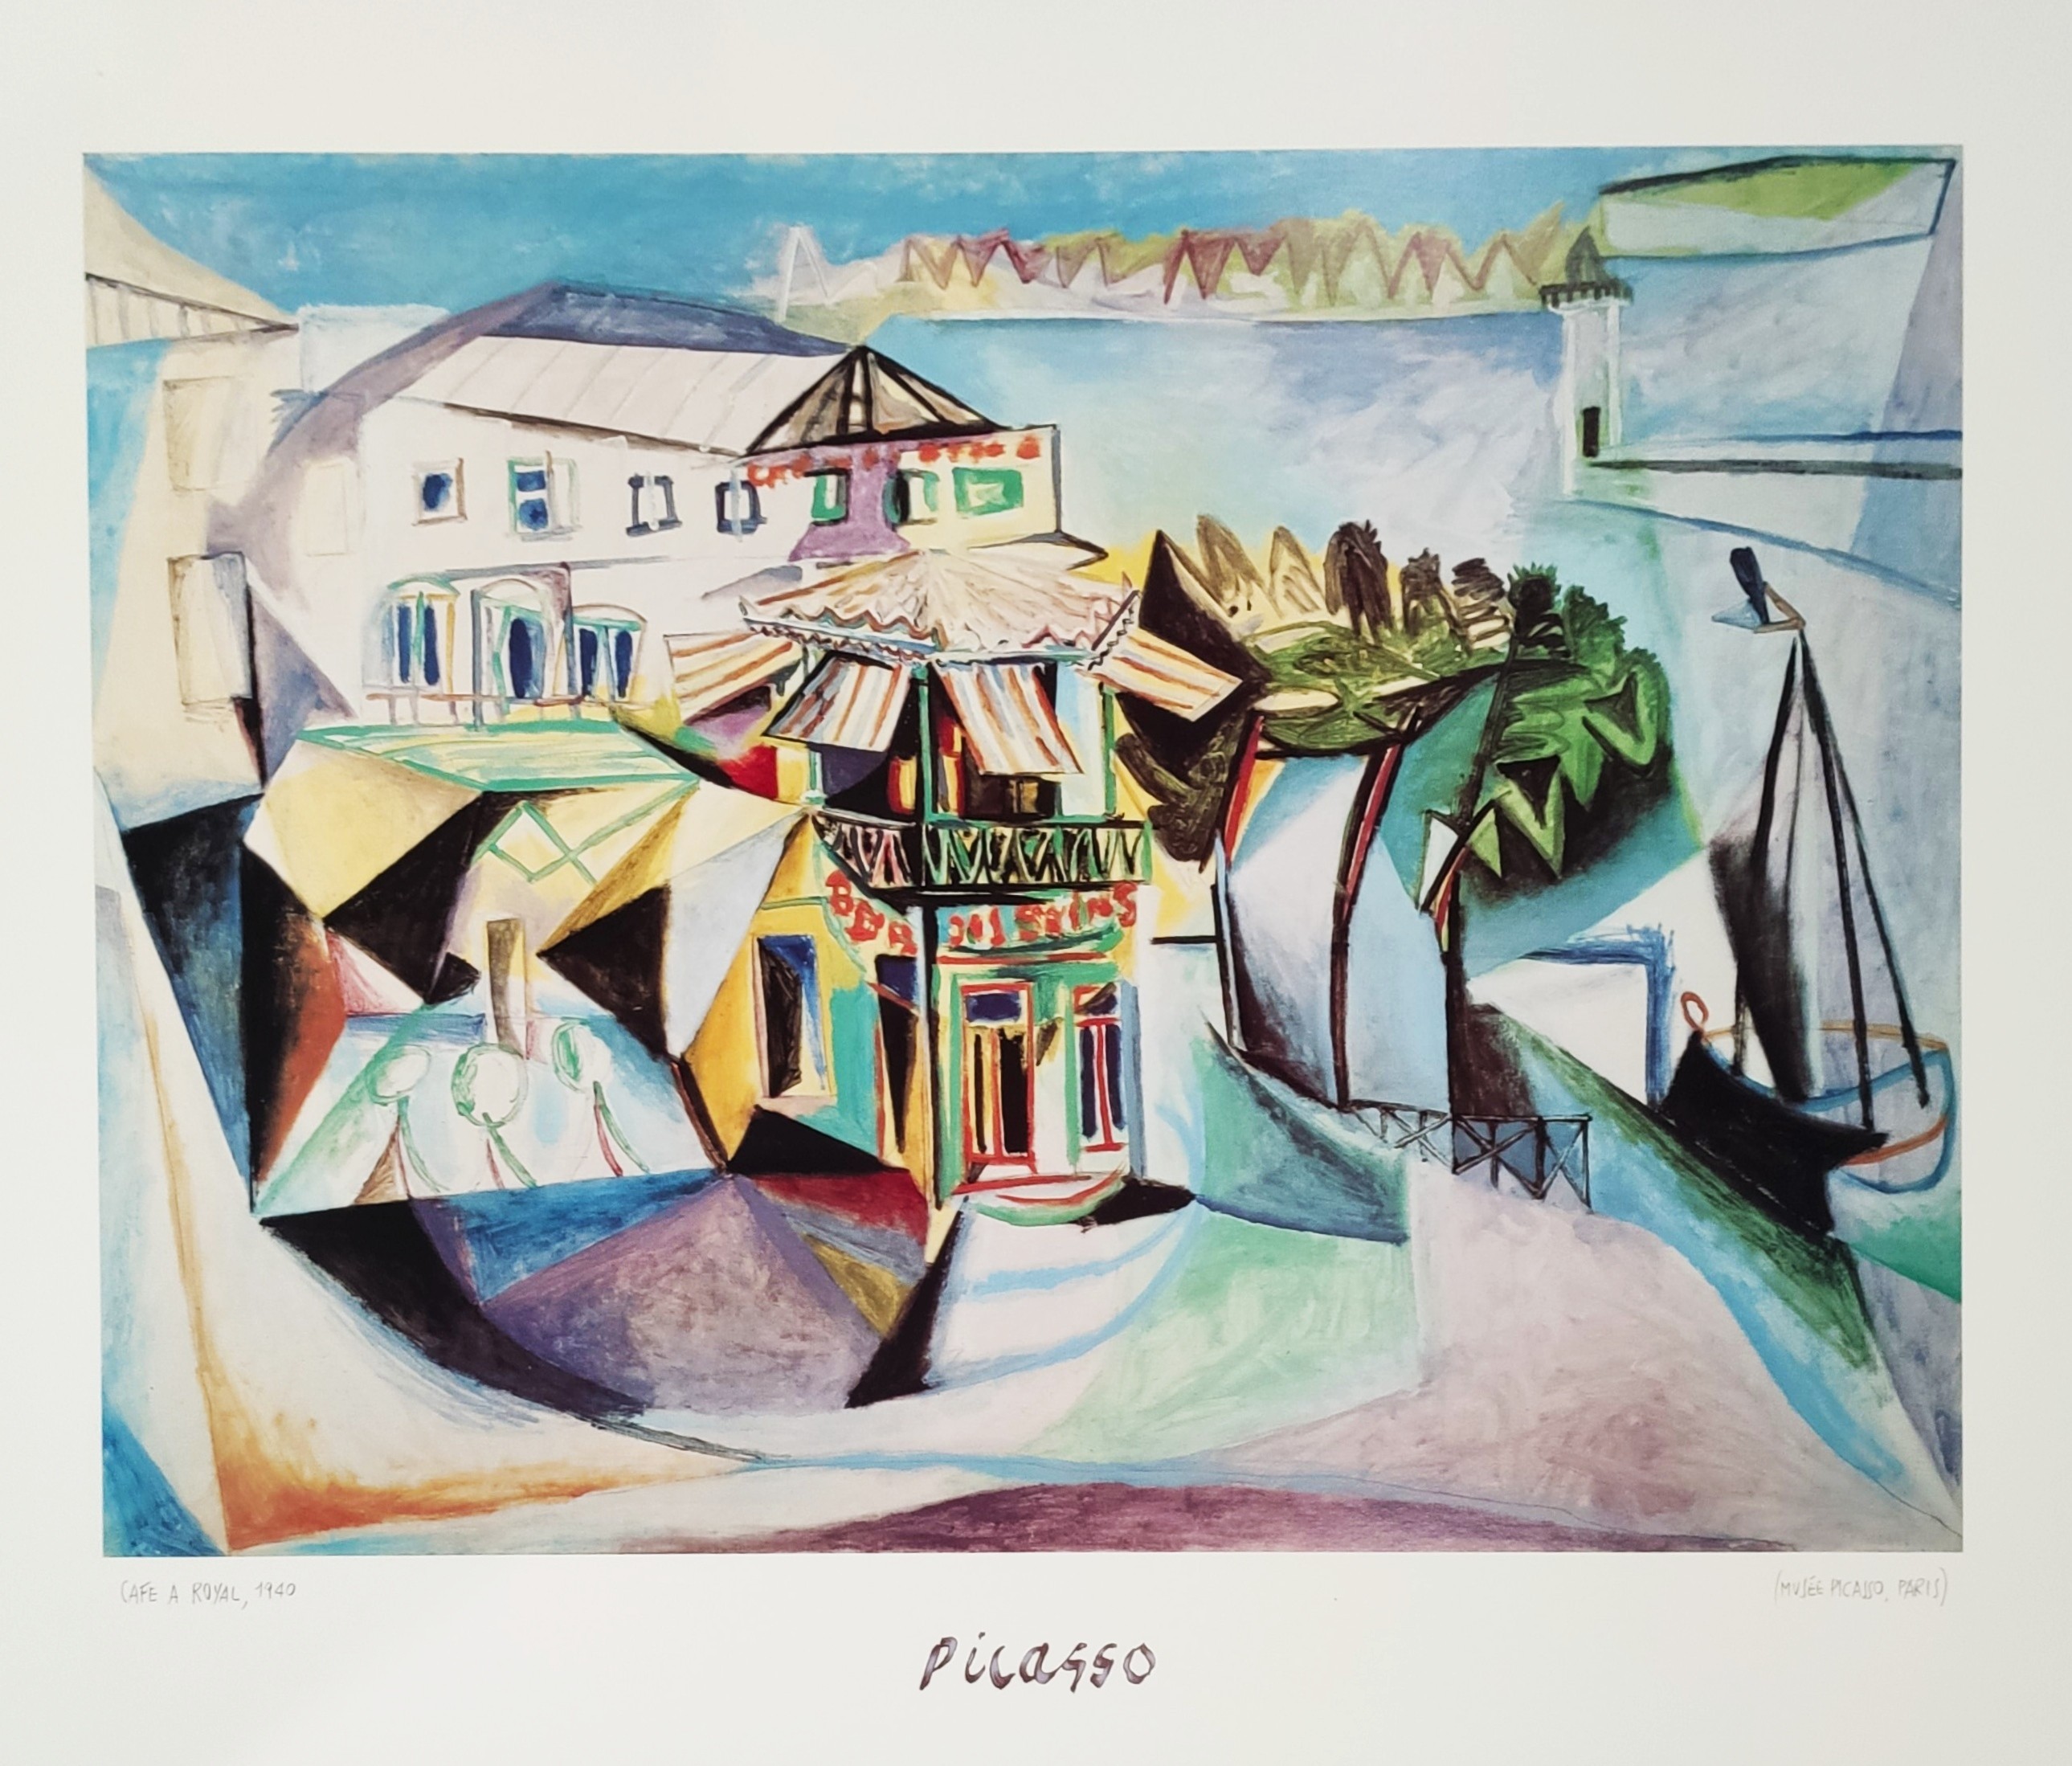 CAFE A ROYAL, 1940 - PICASSO Pablo (d'aprés) (1881 - 1973) - Print